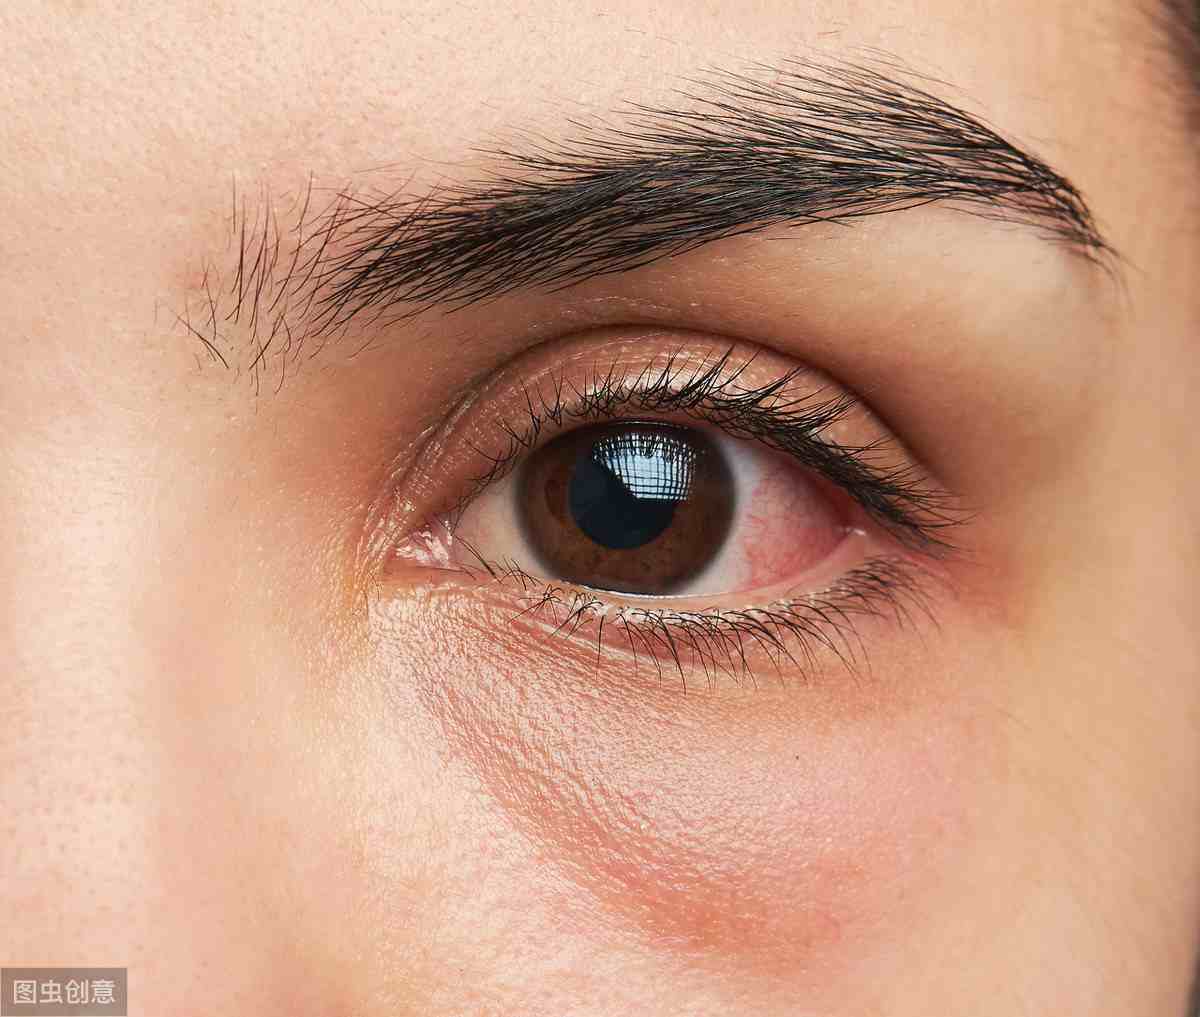 治疗病毒性角膜炎的常用眼药水有哪些？